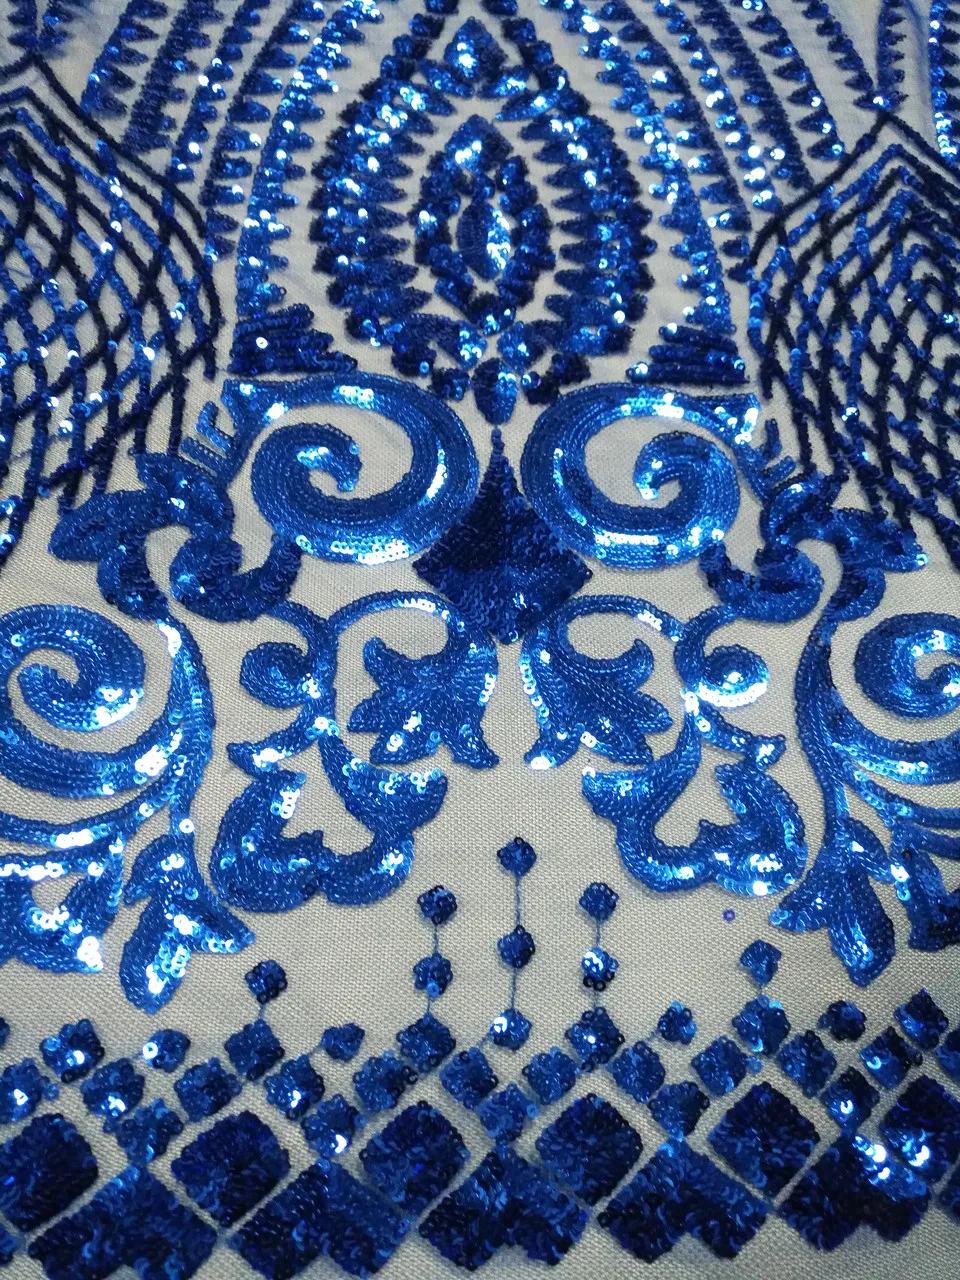 Французская сетка тюль кружевная ткань Африканская кружевная ткань высокое качество кружева с блестками, нигерийские кружевные ткани для женщин платье M1058